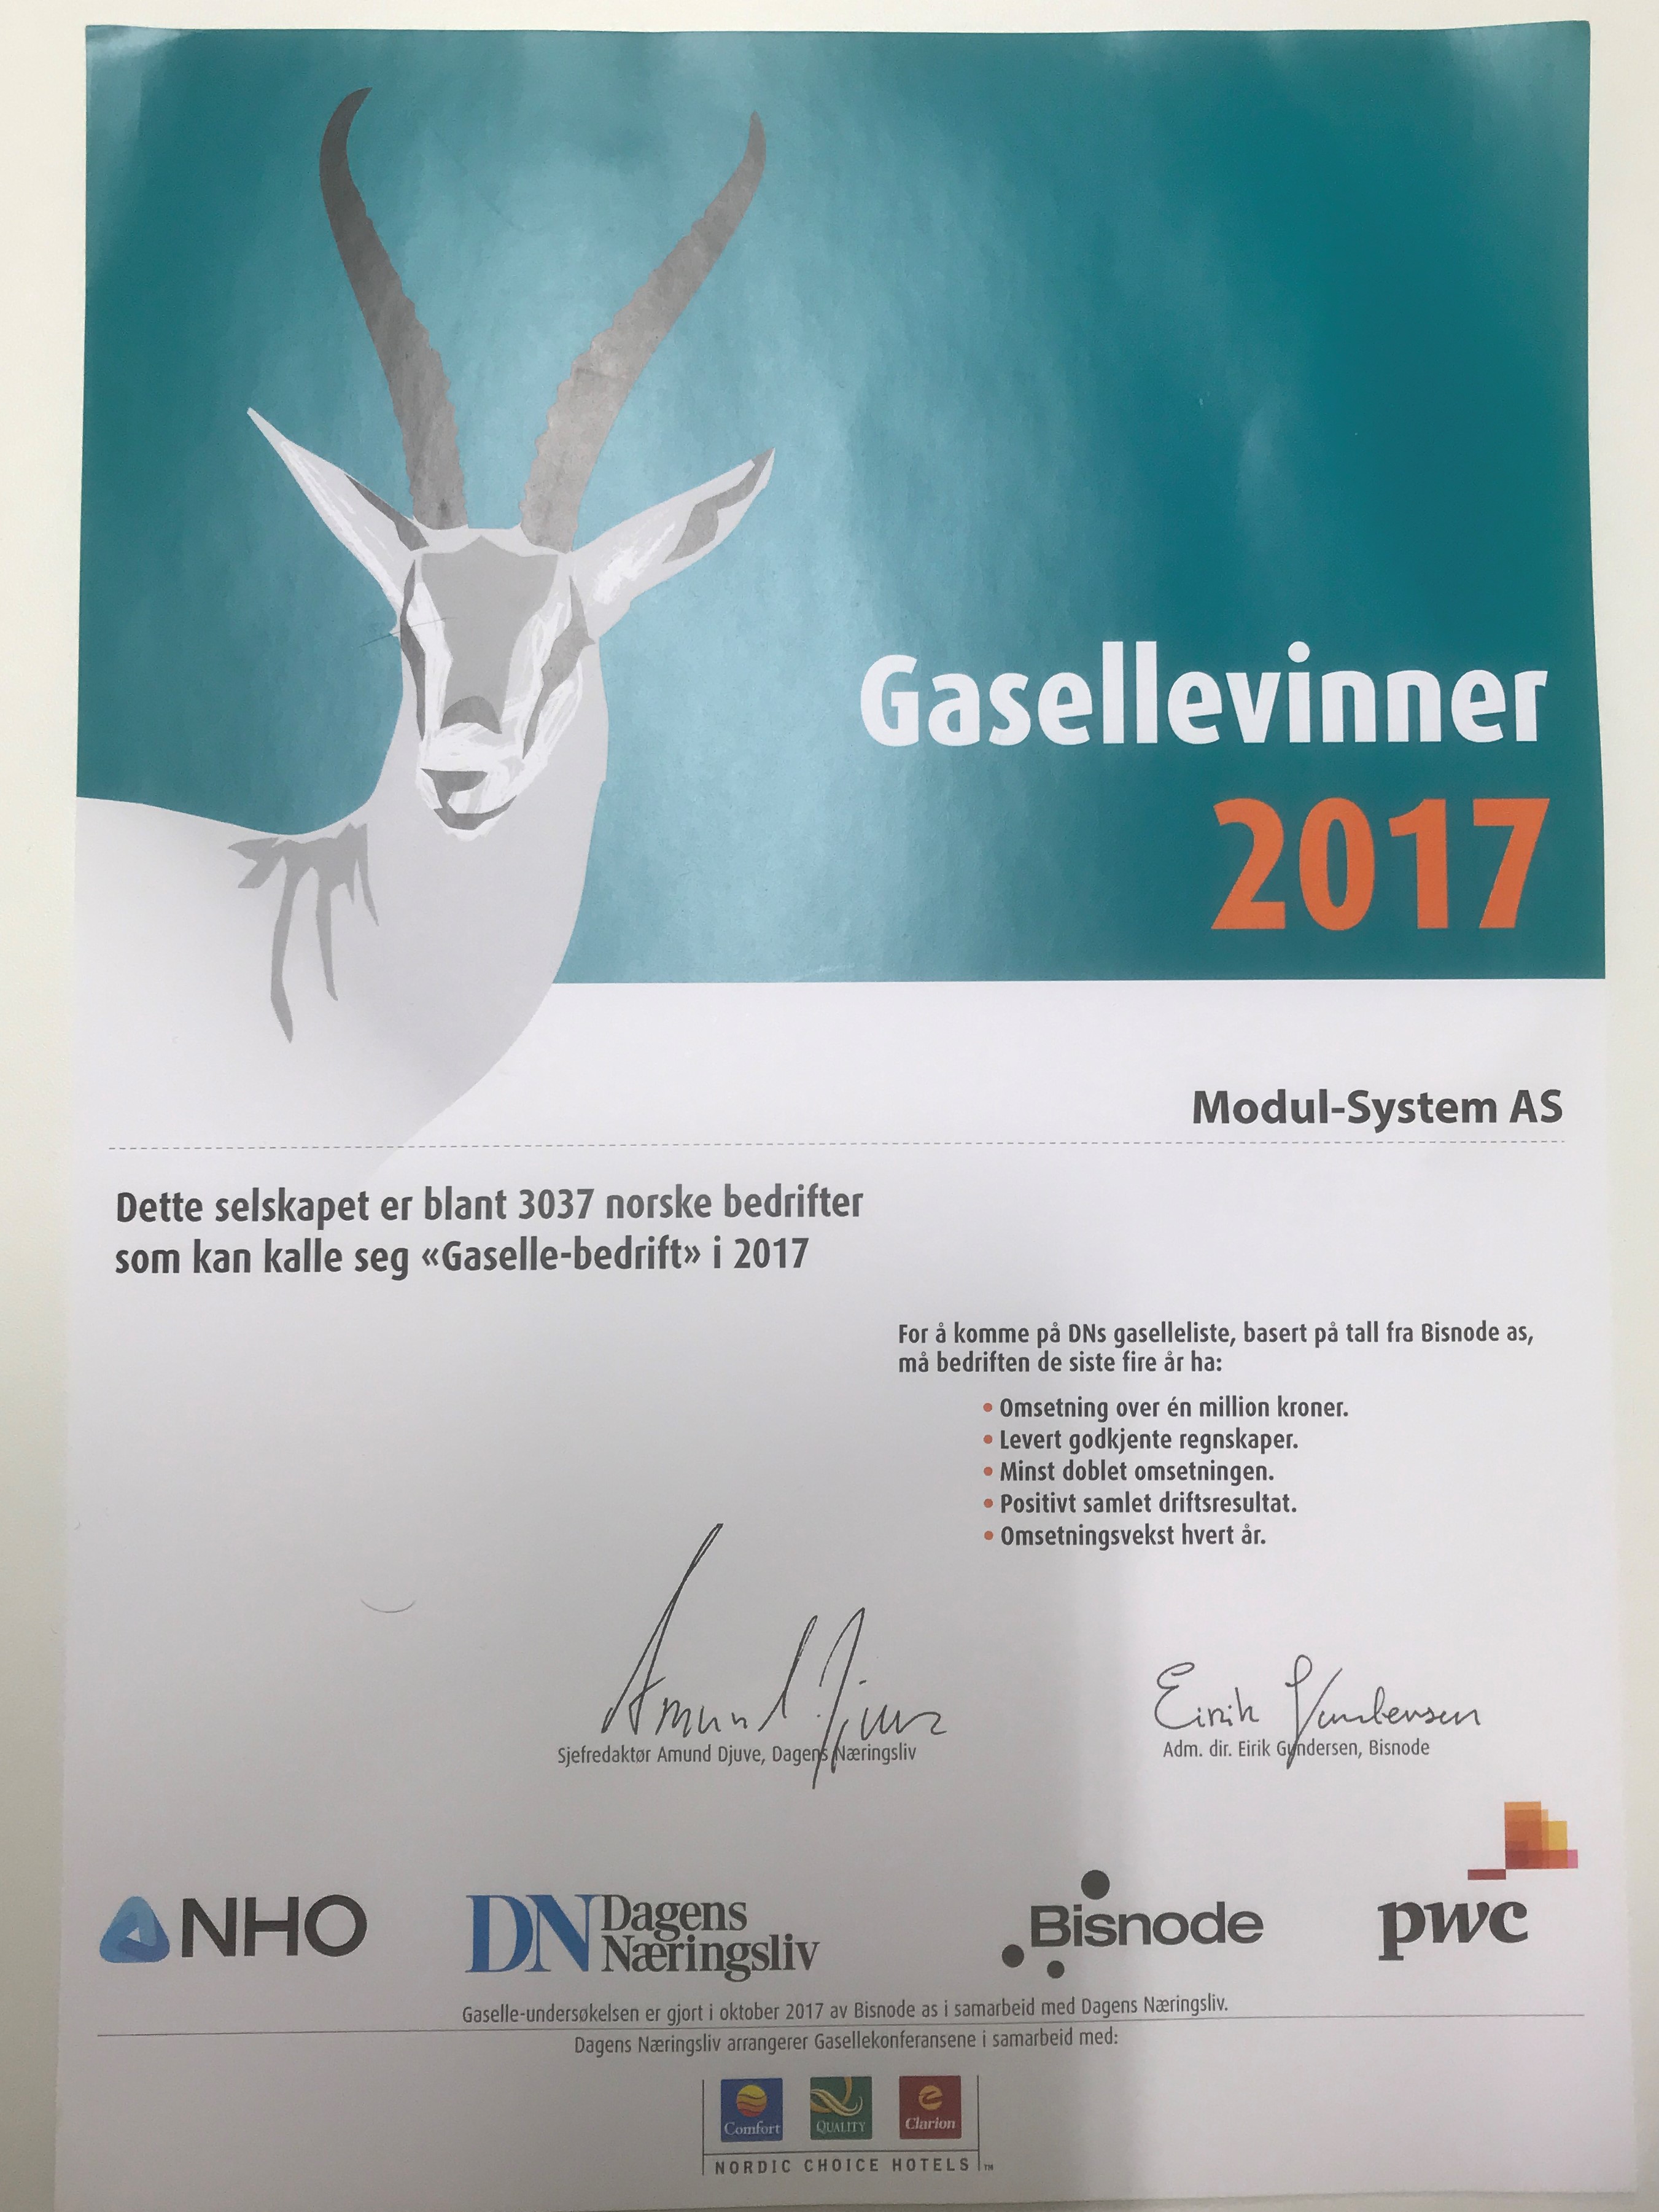 Modul-System AS har blivit utsedd till Gasellevinner i Norge